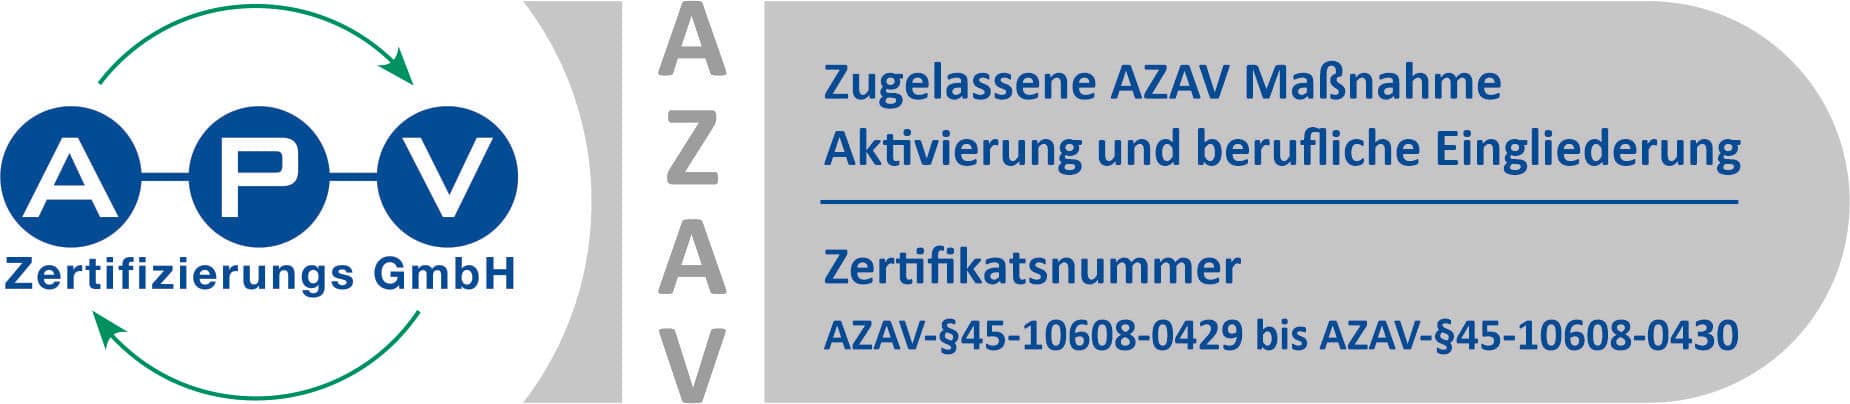 APV-Zertifikat-Logo QM-AZAV 10608-0429-0430-AZAV-45(0)